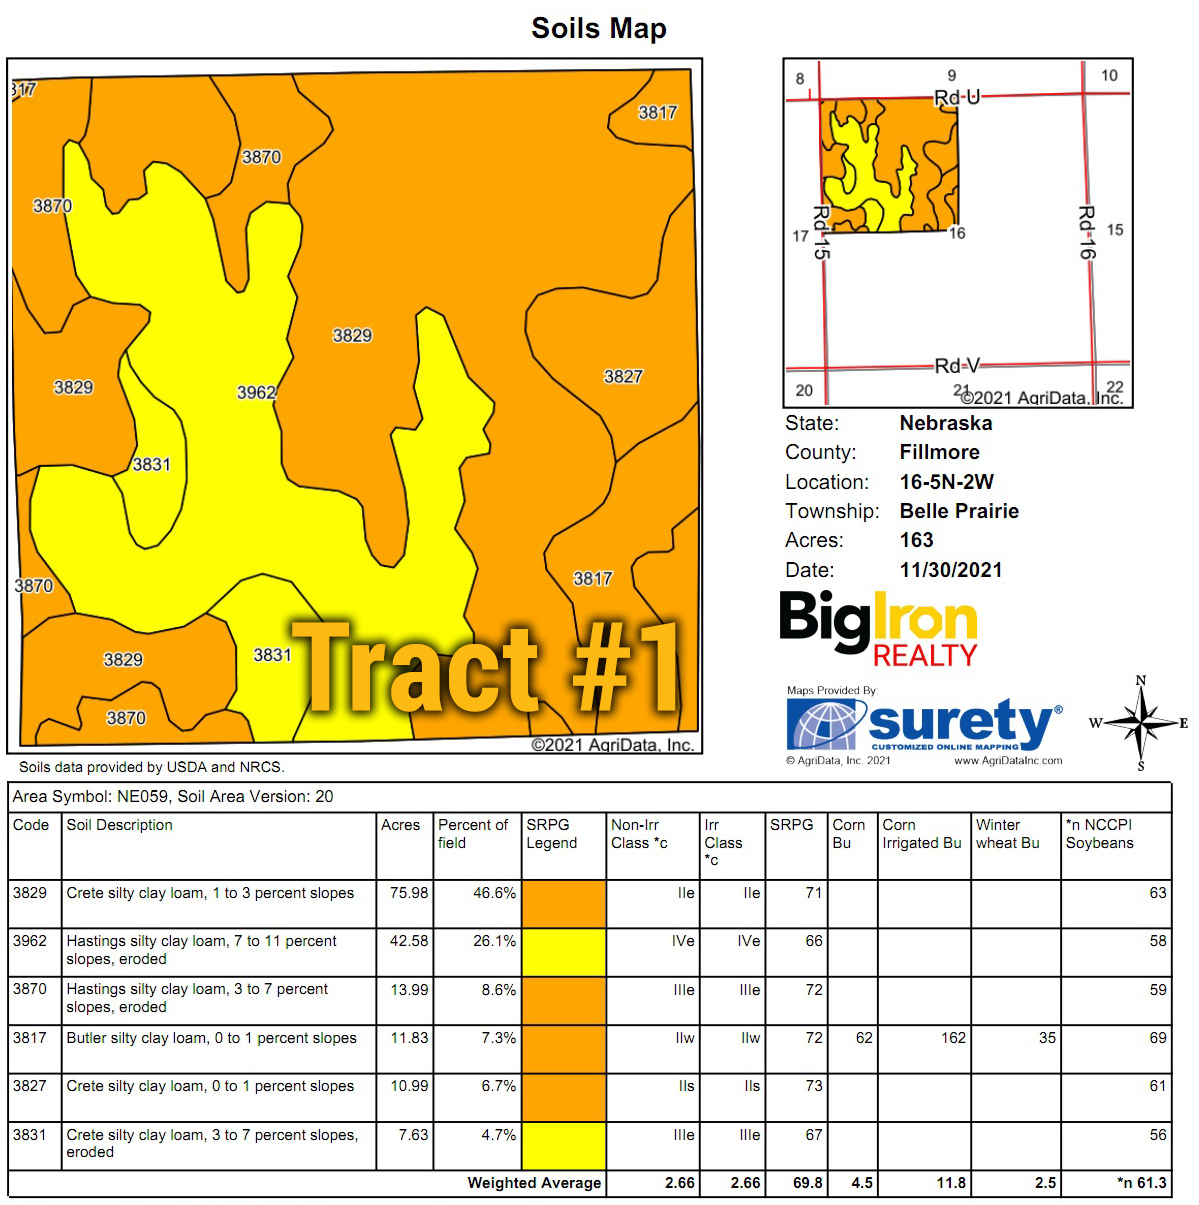 1 Soils Map_BIR-2203